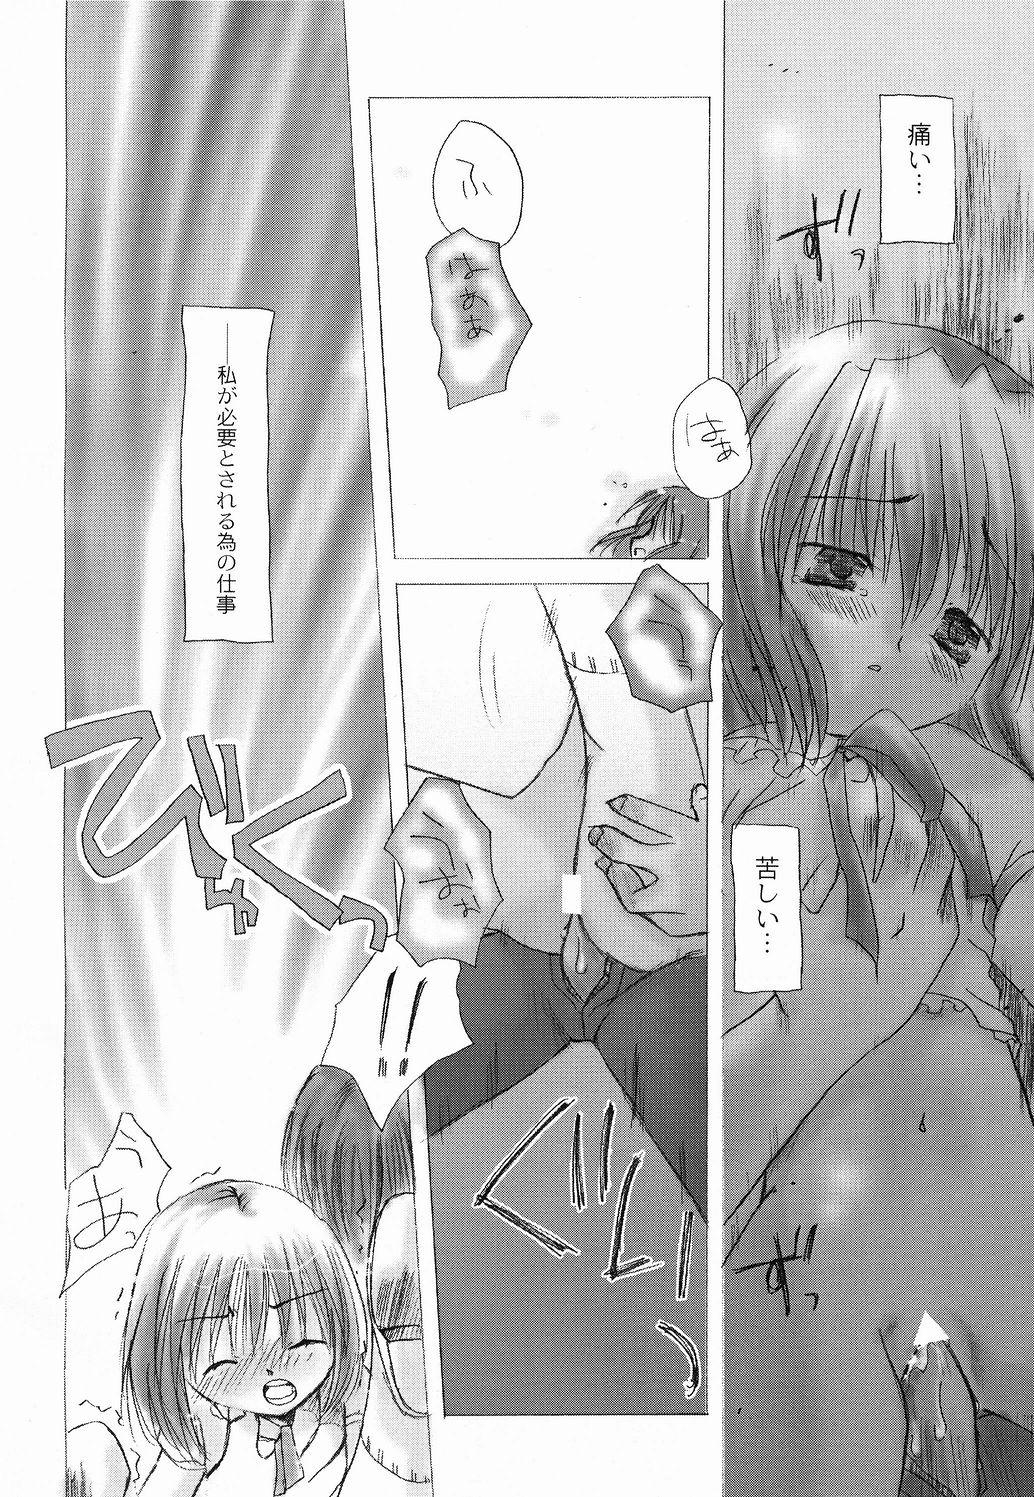 Mofos Taiyou to Tsuki ni Somuite - Tsukihime Face - Page 11